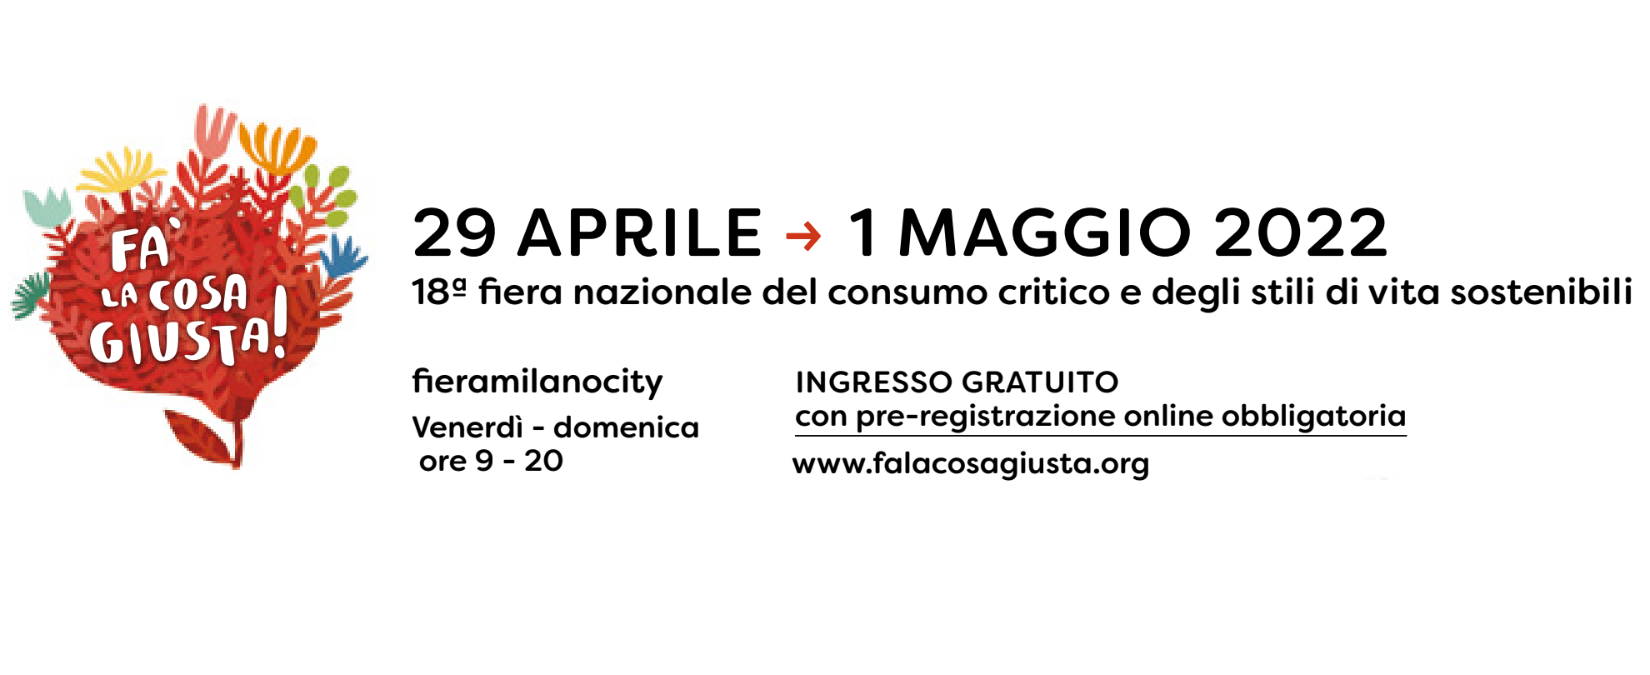 Dal 29 aprile a Milano Fa’ la cosa giusta! 2022, la fiera del consumo critico e degli stili di vita sostenibili